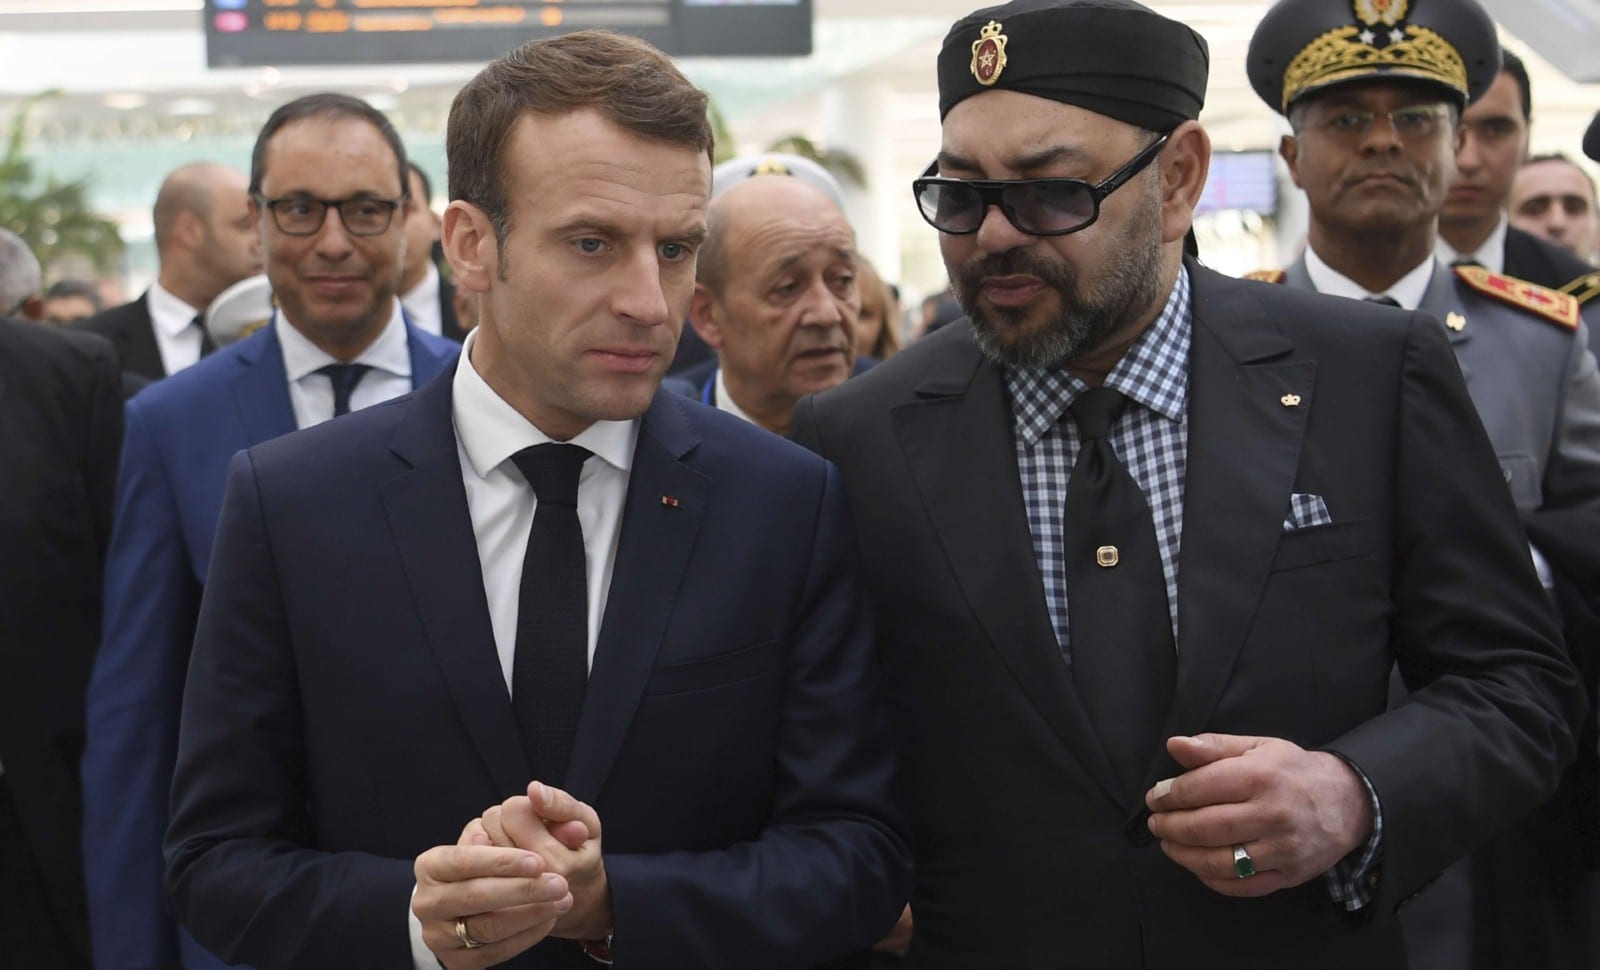 Sahara occidental: le soutien au plan marocain marque une réorientation stratégique française bienvenue